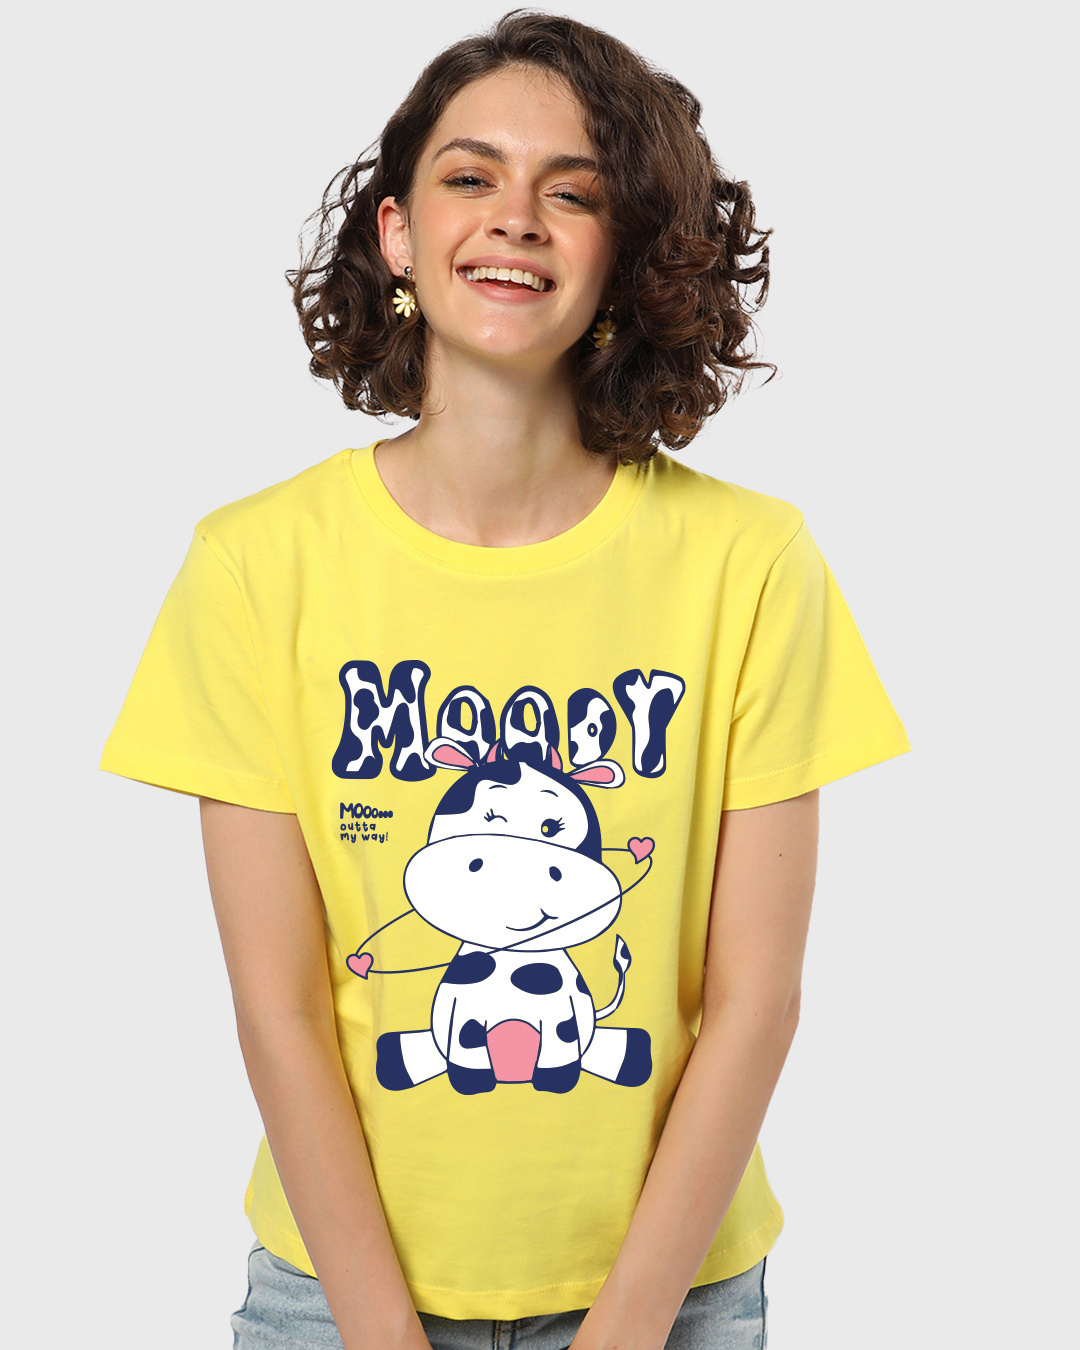 Buy Womens Yellow Moody Moo Graphic Printed T Shirt For Women Yellowtail Online At Bewakoof 5149